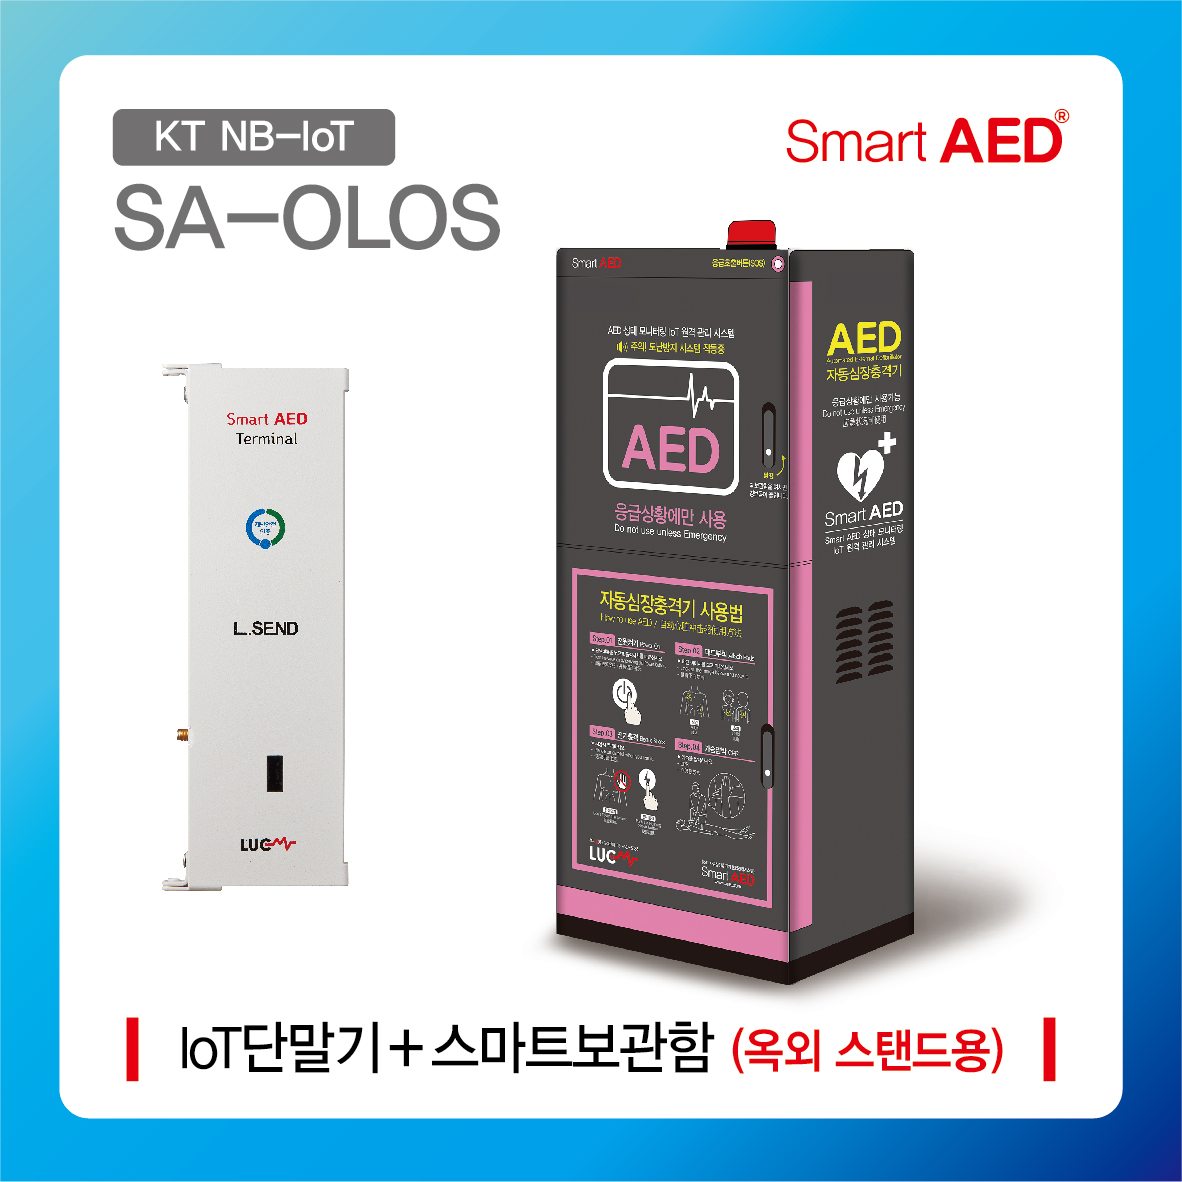 [ SA-OLOS ] 스마트 AED 통합모니터링 장치 및 플랫폼